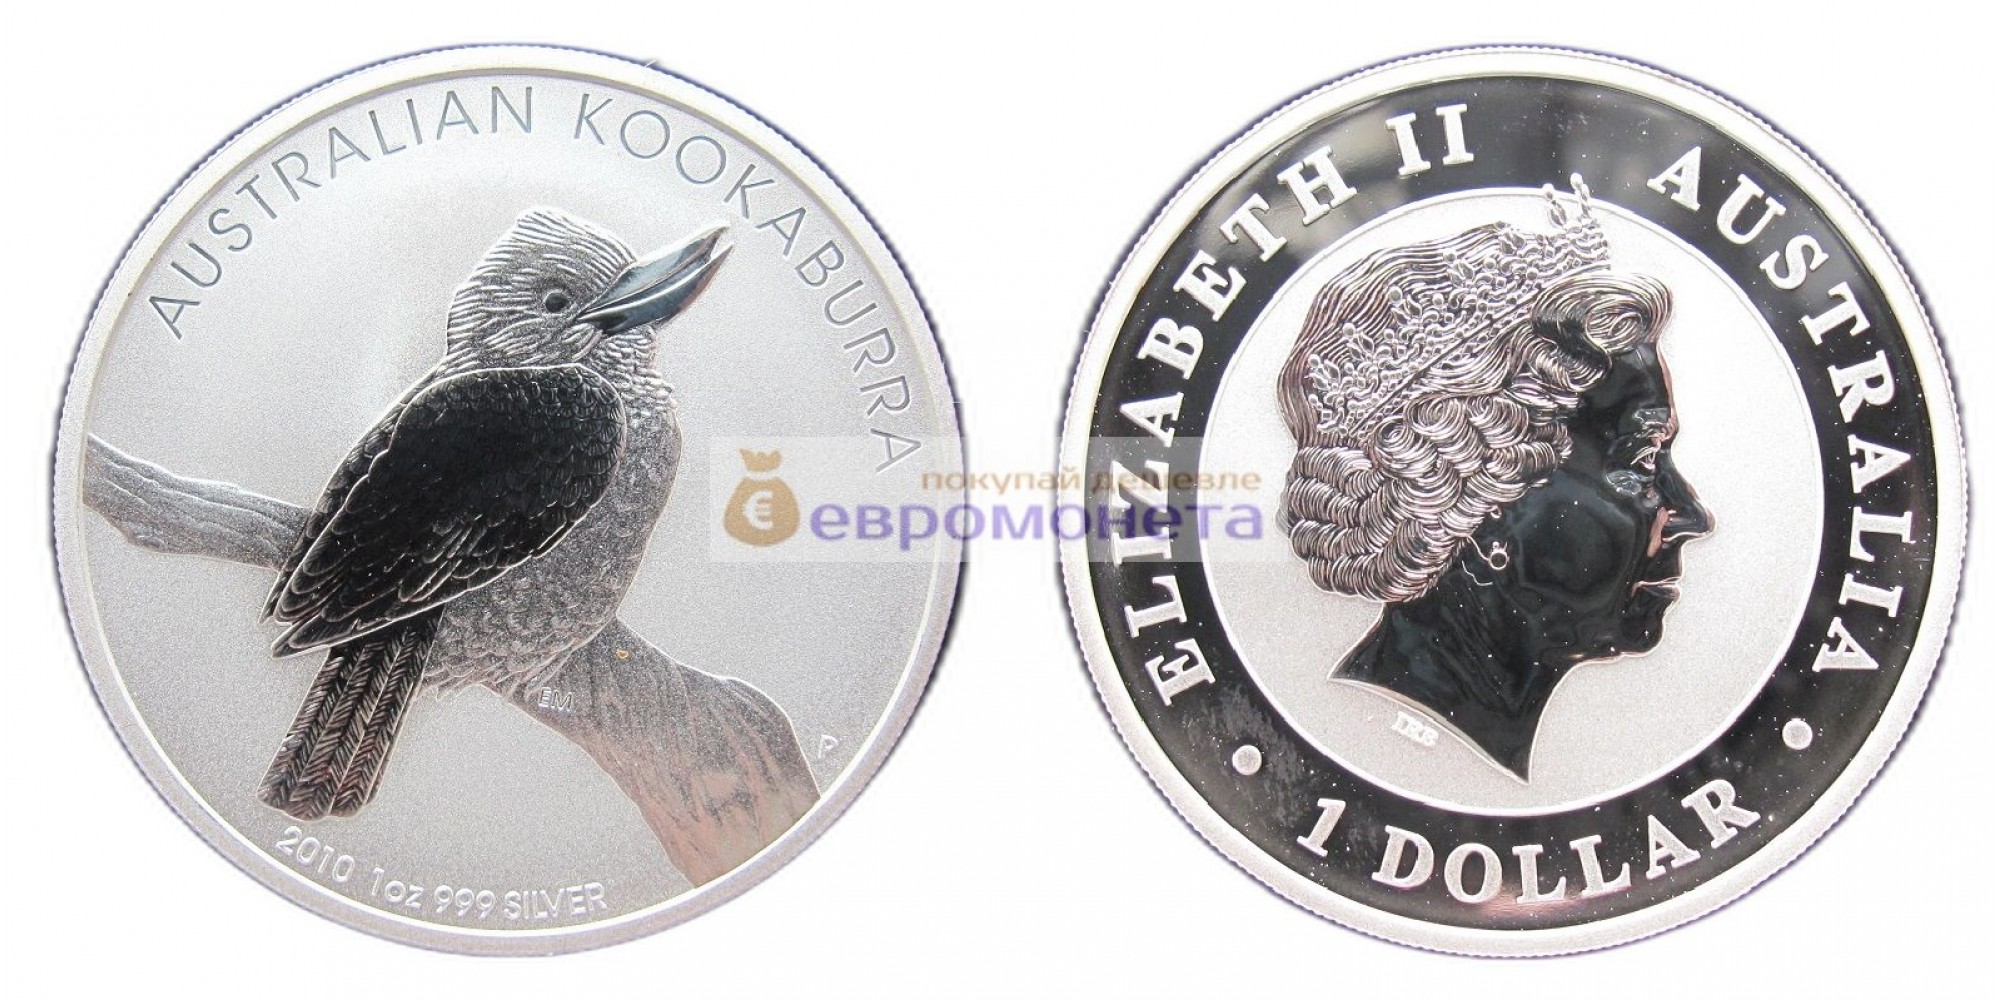 Австралия 1 доллар 2010 год Австралийская Кукабарра kookaburra. Серебро. пруф / proof